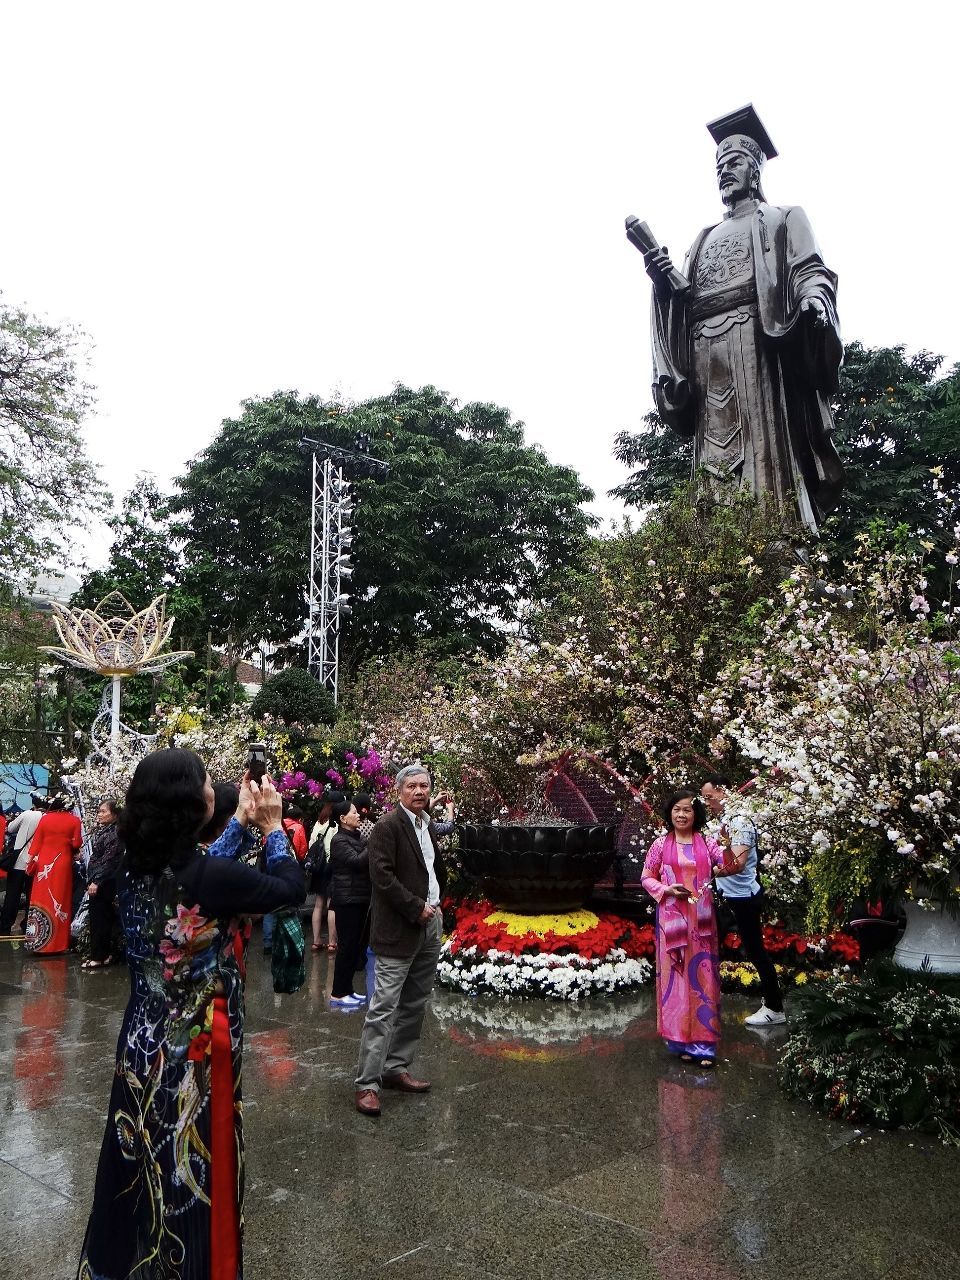 памятник основателю города -  вьетнамский император (с 1009), основатель династии Поздние Ли. - Фотоотчет Вьетнам 2019. Часть 1 - день 1